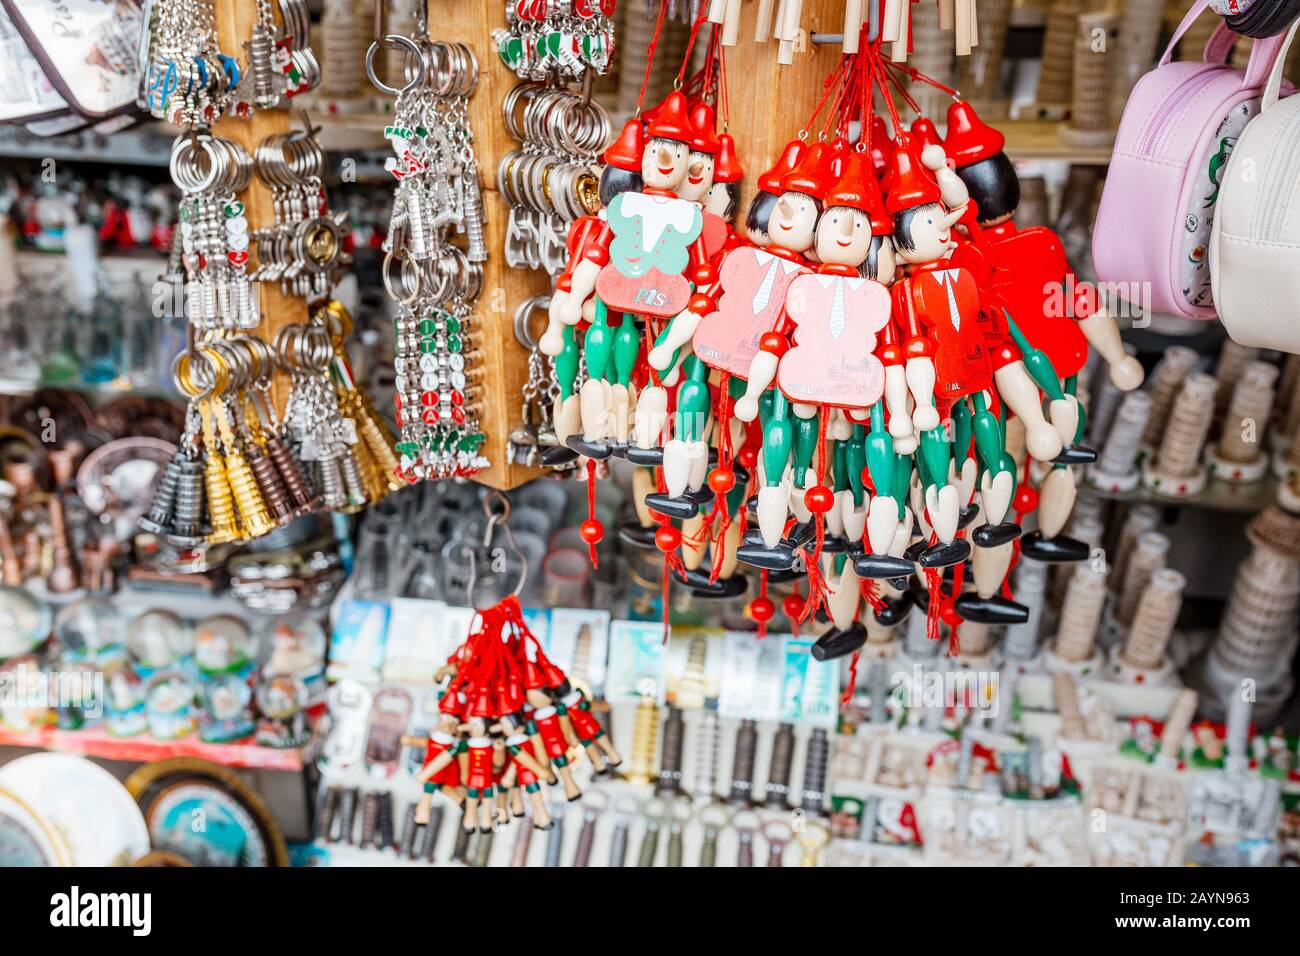 Pisa, ITALIEN - 15. Oktober 2018: Souvenirs und pinocchio Puppen im Touristengeschäft zum Verkauf Stockfoto